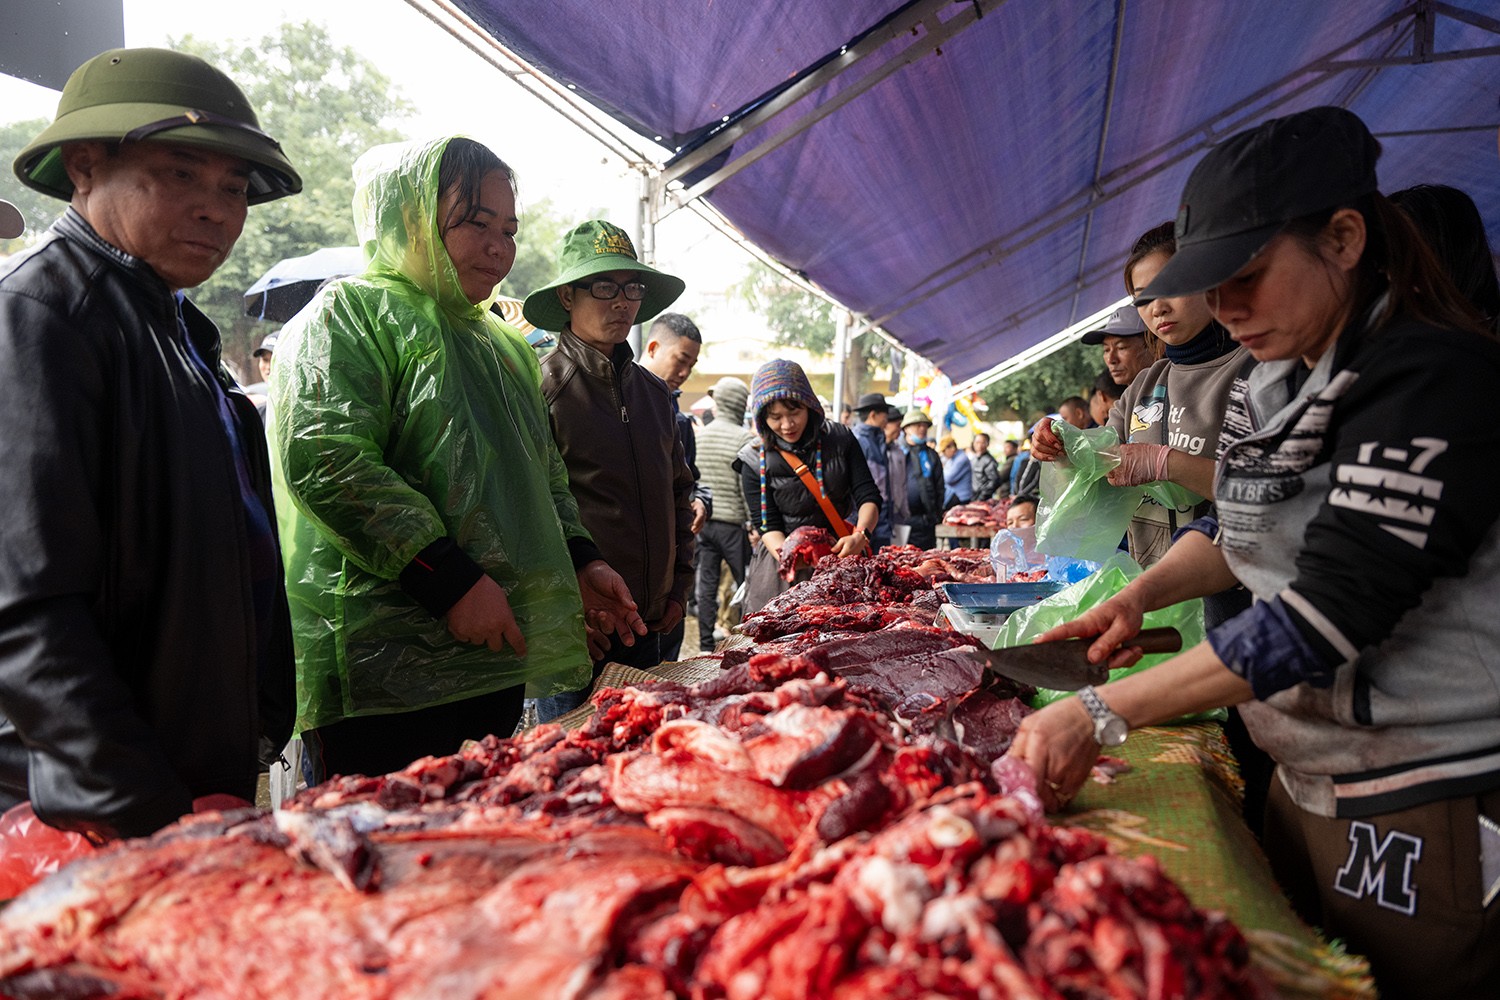 Tất cả những con trâu tham gia sau lễ hội đều được mang xẻ thịt để bán cho người dân và du khách